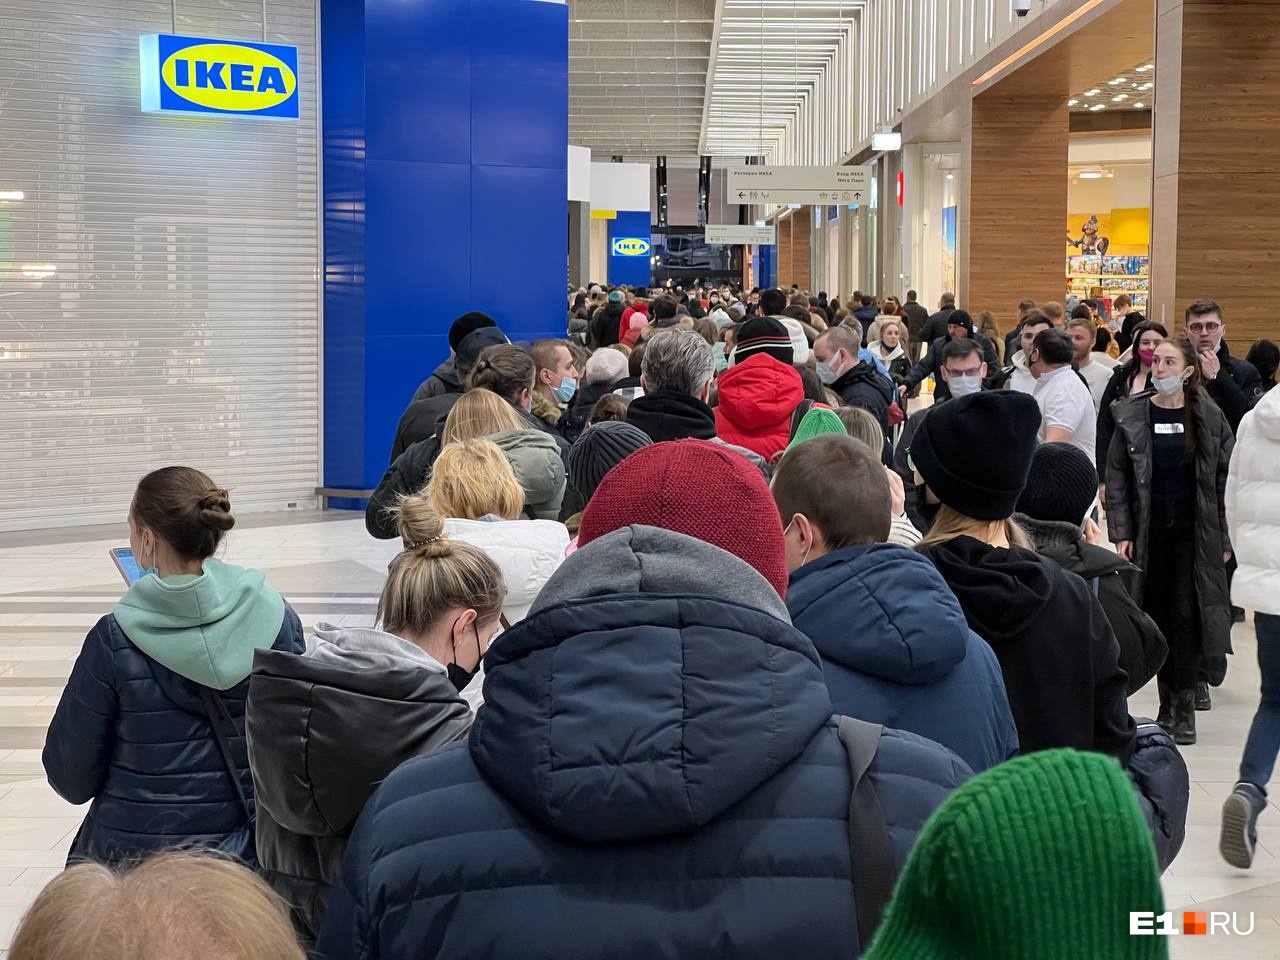 Интересно, выдержит ли сайт магазина такой же наплыв людей, что был в IKEA в последний день работы?